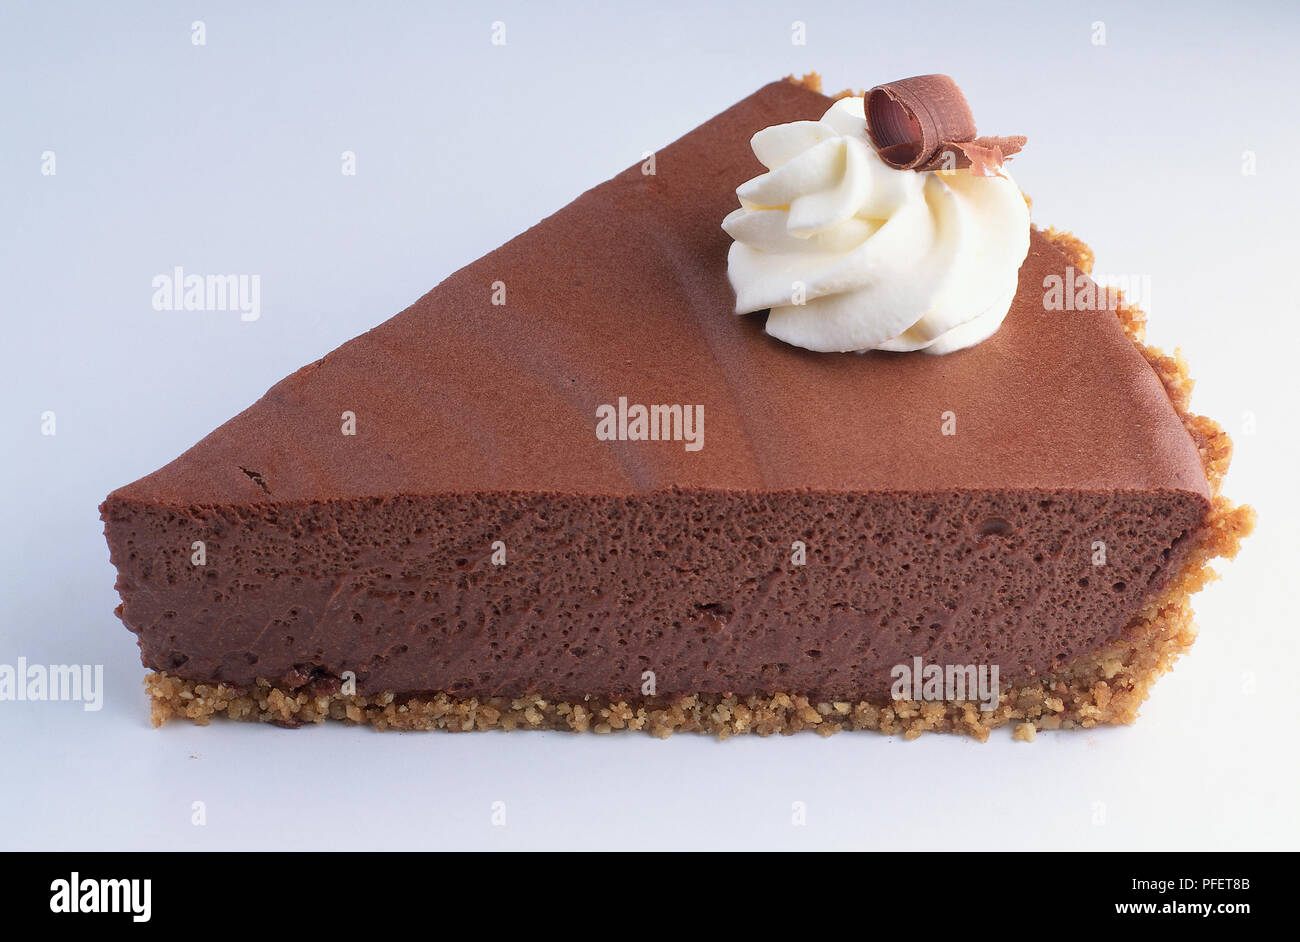 Ein Stück Schokolade Kuchen mit cremefarbenen Tönen gehalten. Stockfoto